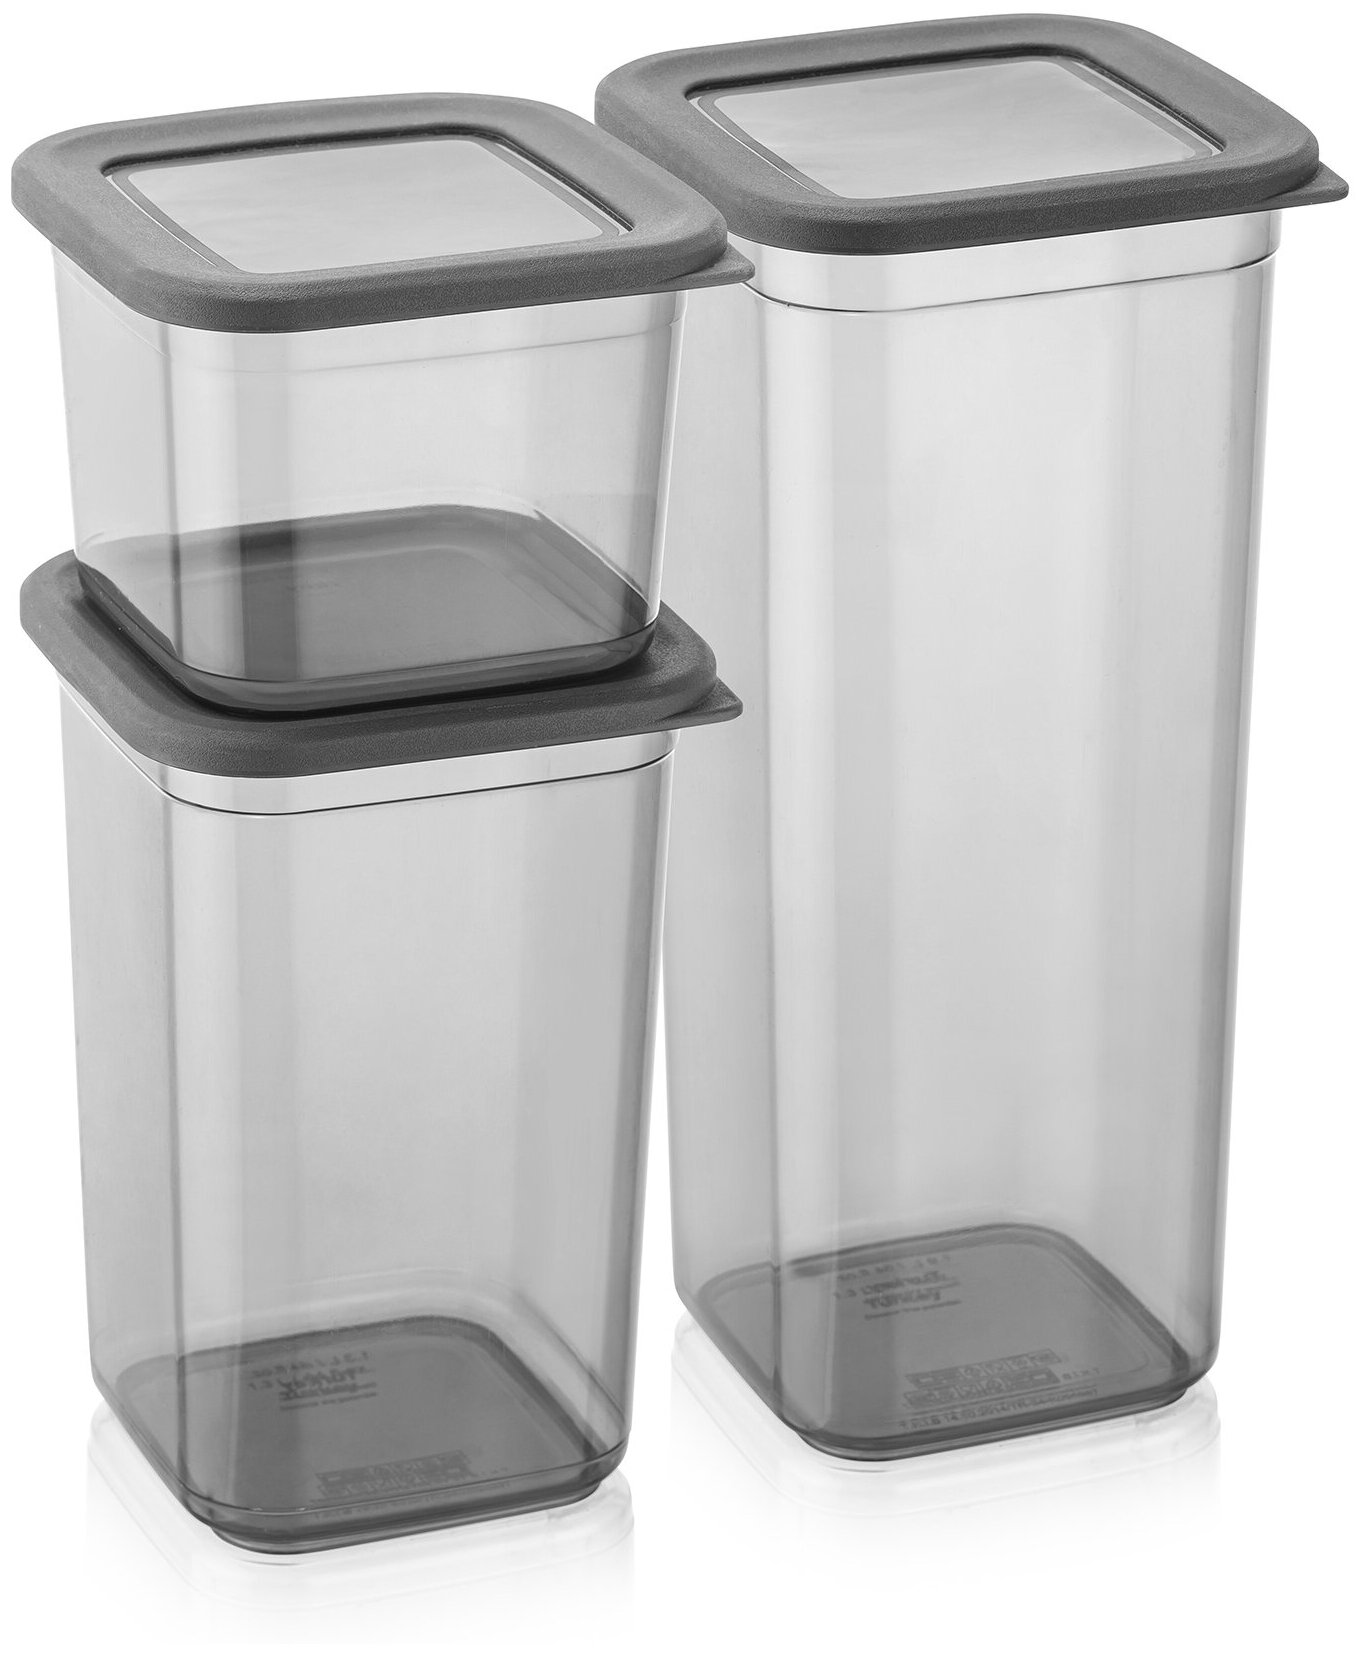 Набор из трех контейнеров разного размера: 0,65л (8,5х8,5см), 1,3л (16,5х8,5см), 1,9л (24х8,5см)Материал: прозрачный черный пластик